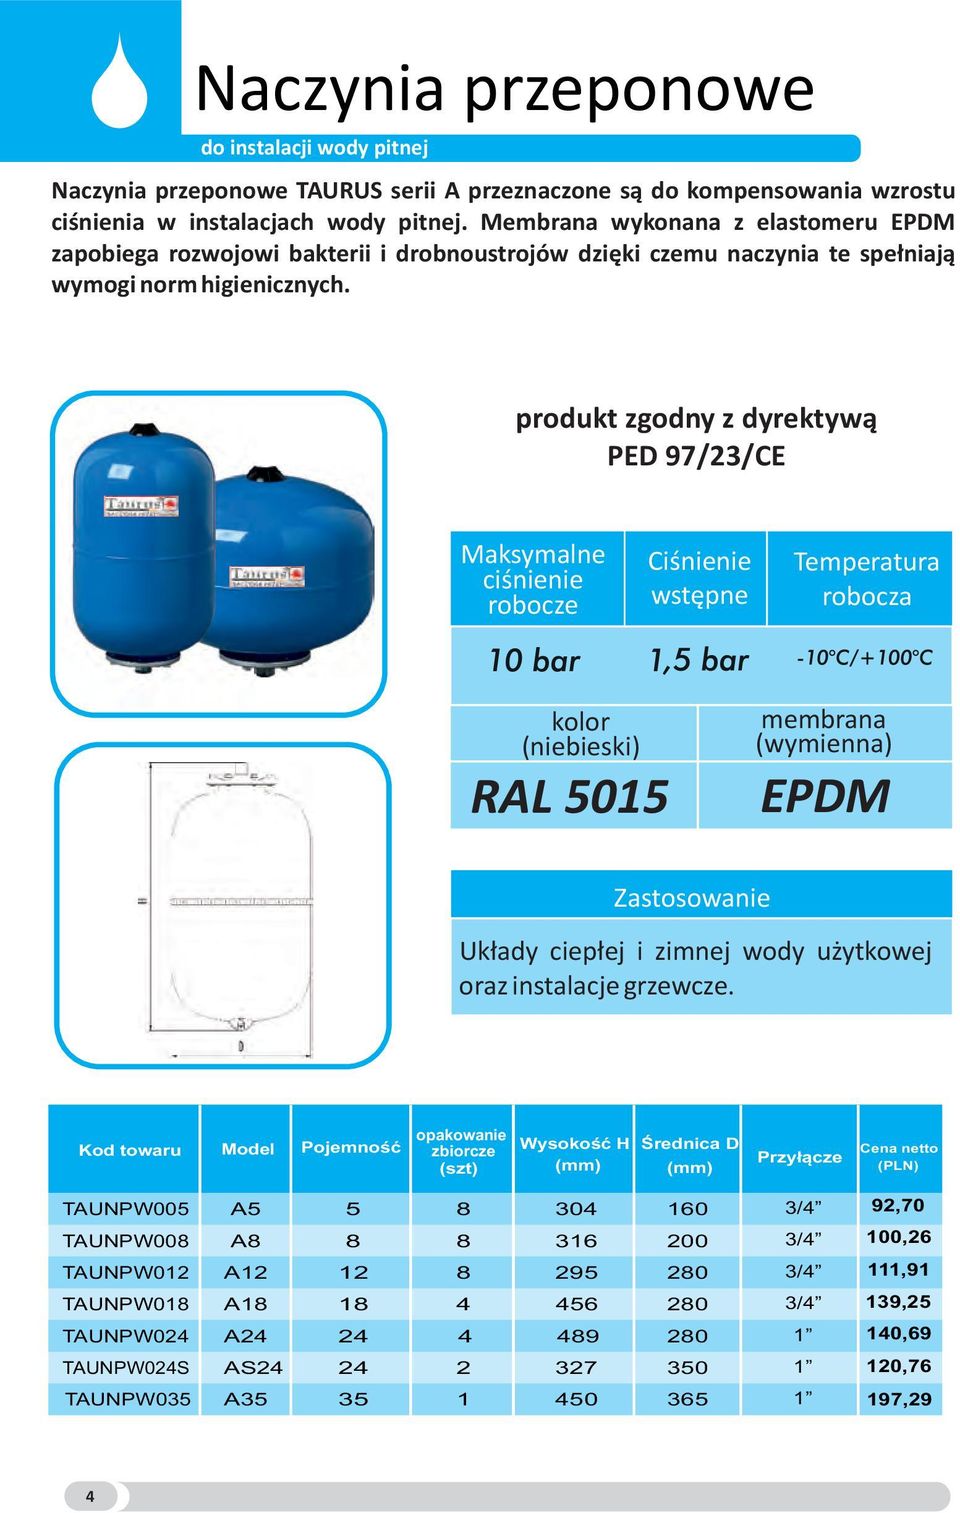 produkt zgodny z dyrektywą PED 97/23/CE Maksymalne ciśnienie robocze Ciśnienie wstępne Temperatura robocza kolor (niebieski) RAL 5015 membrana (wymienna) EPDM Zastosowanie Układy ciepłej i zimnej